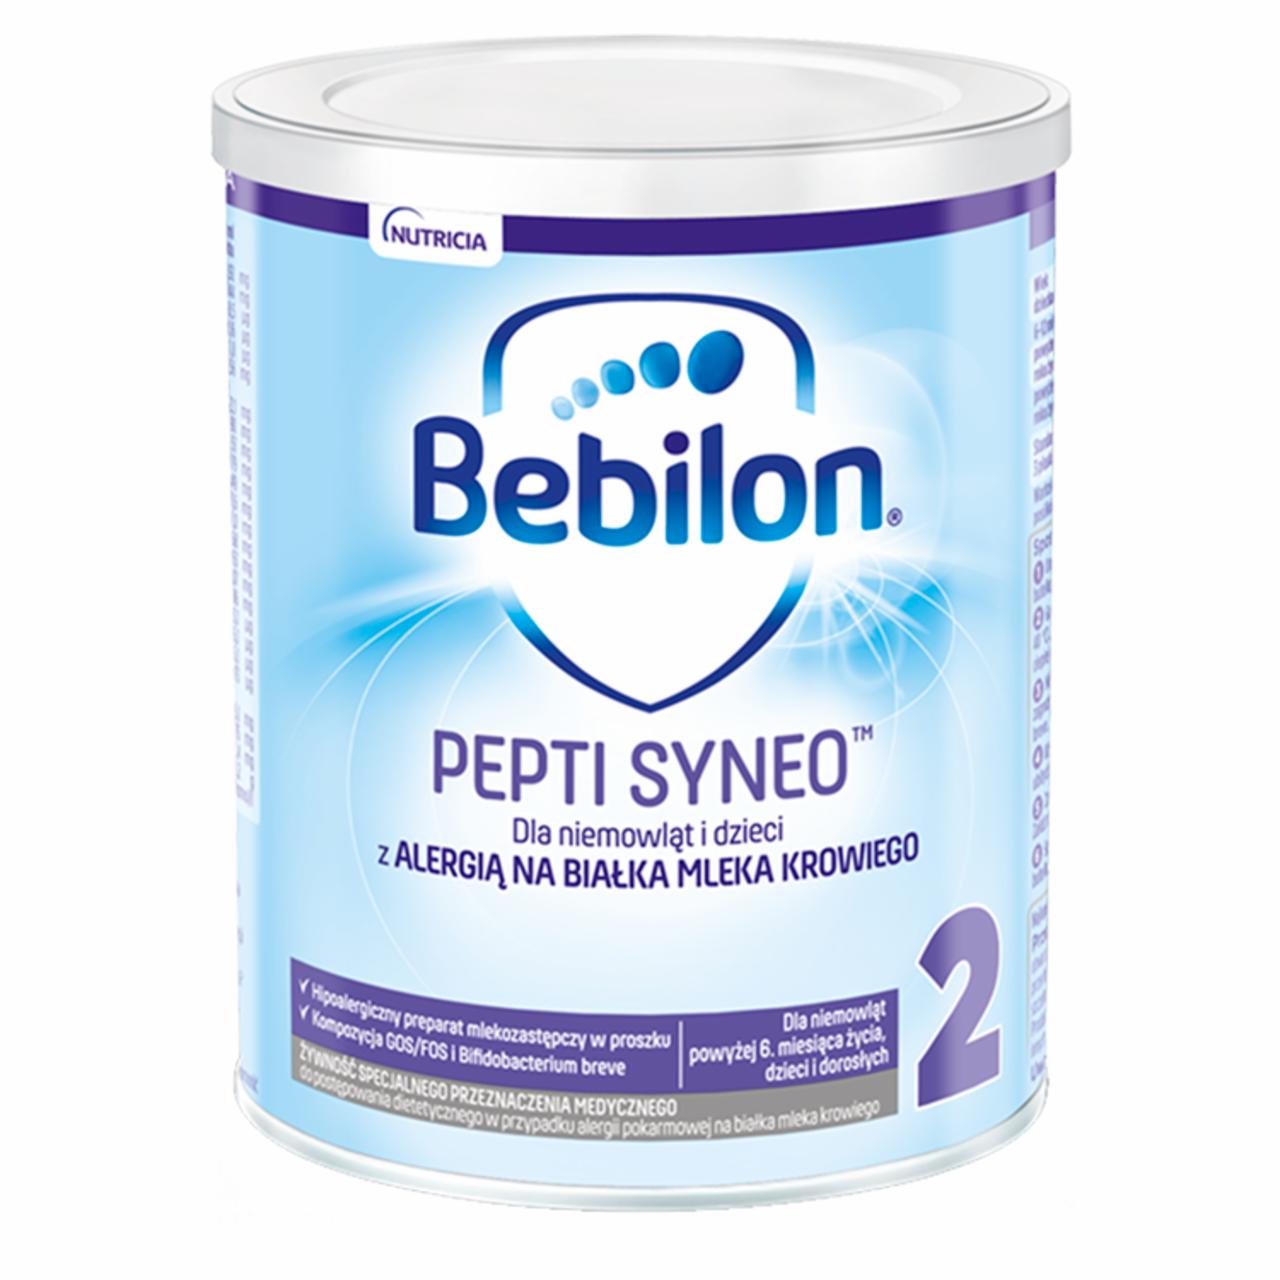 Zdjęcia - Bebilon pepti 2 Syneo Żywność specjalnego przeznaczenia medycznego 400 g